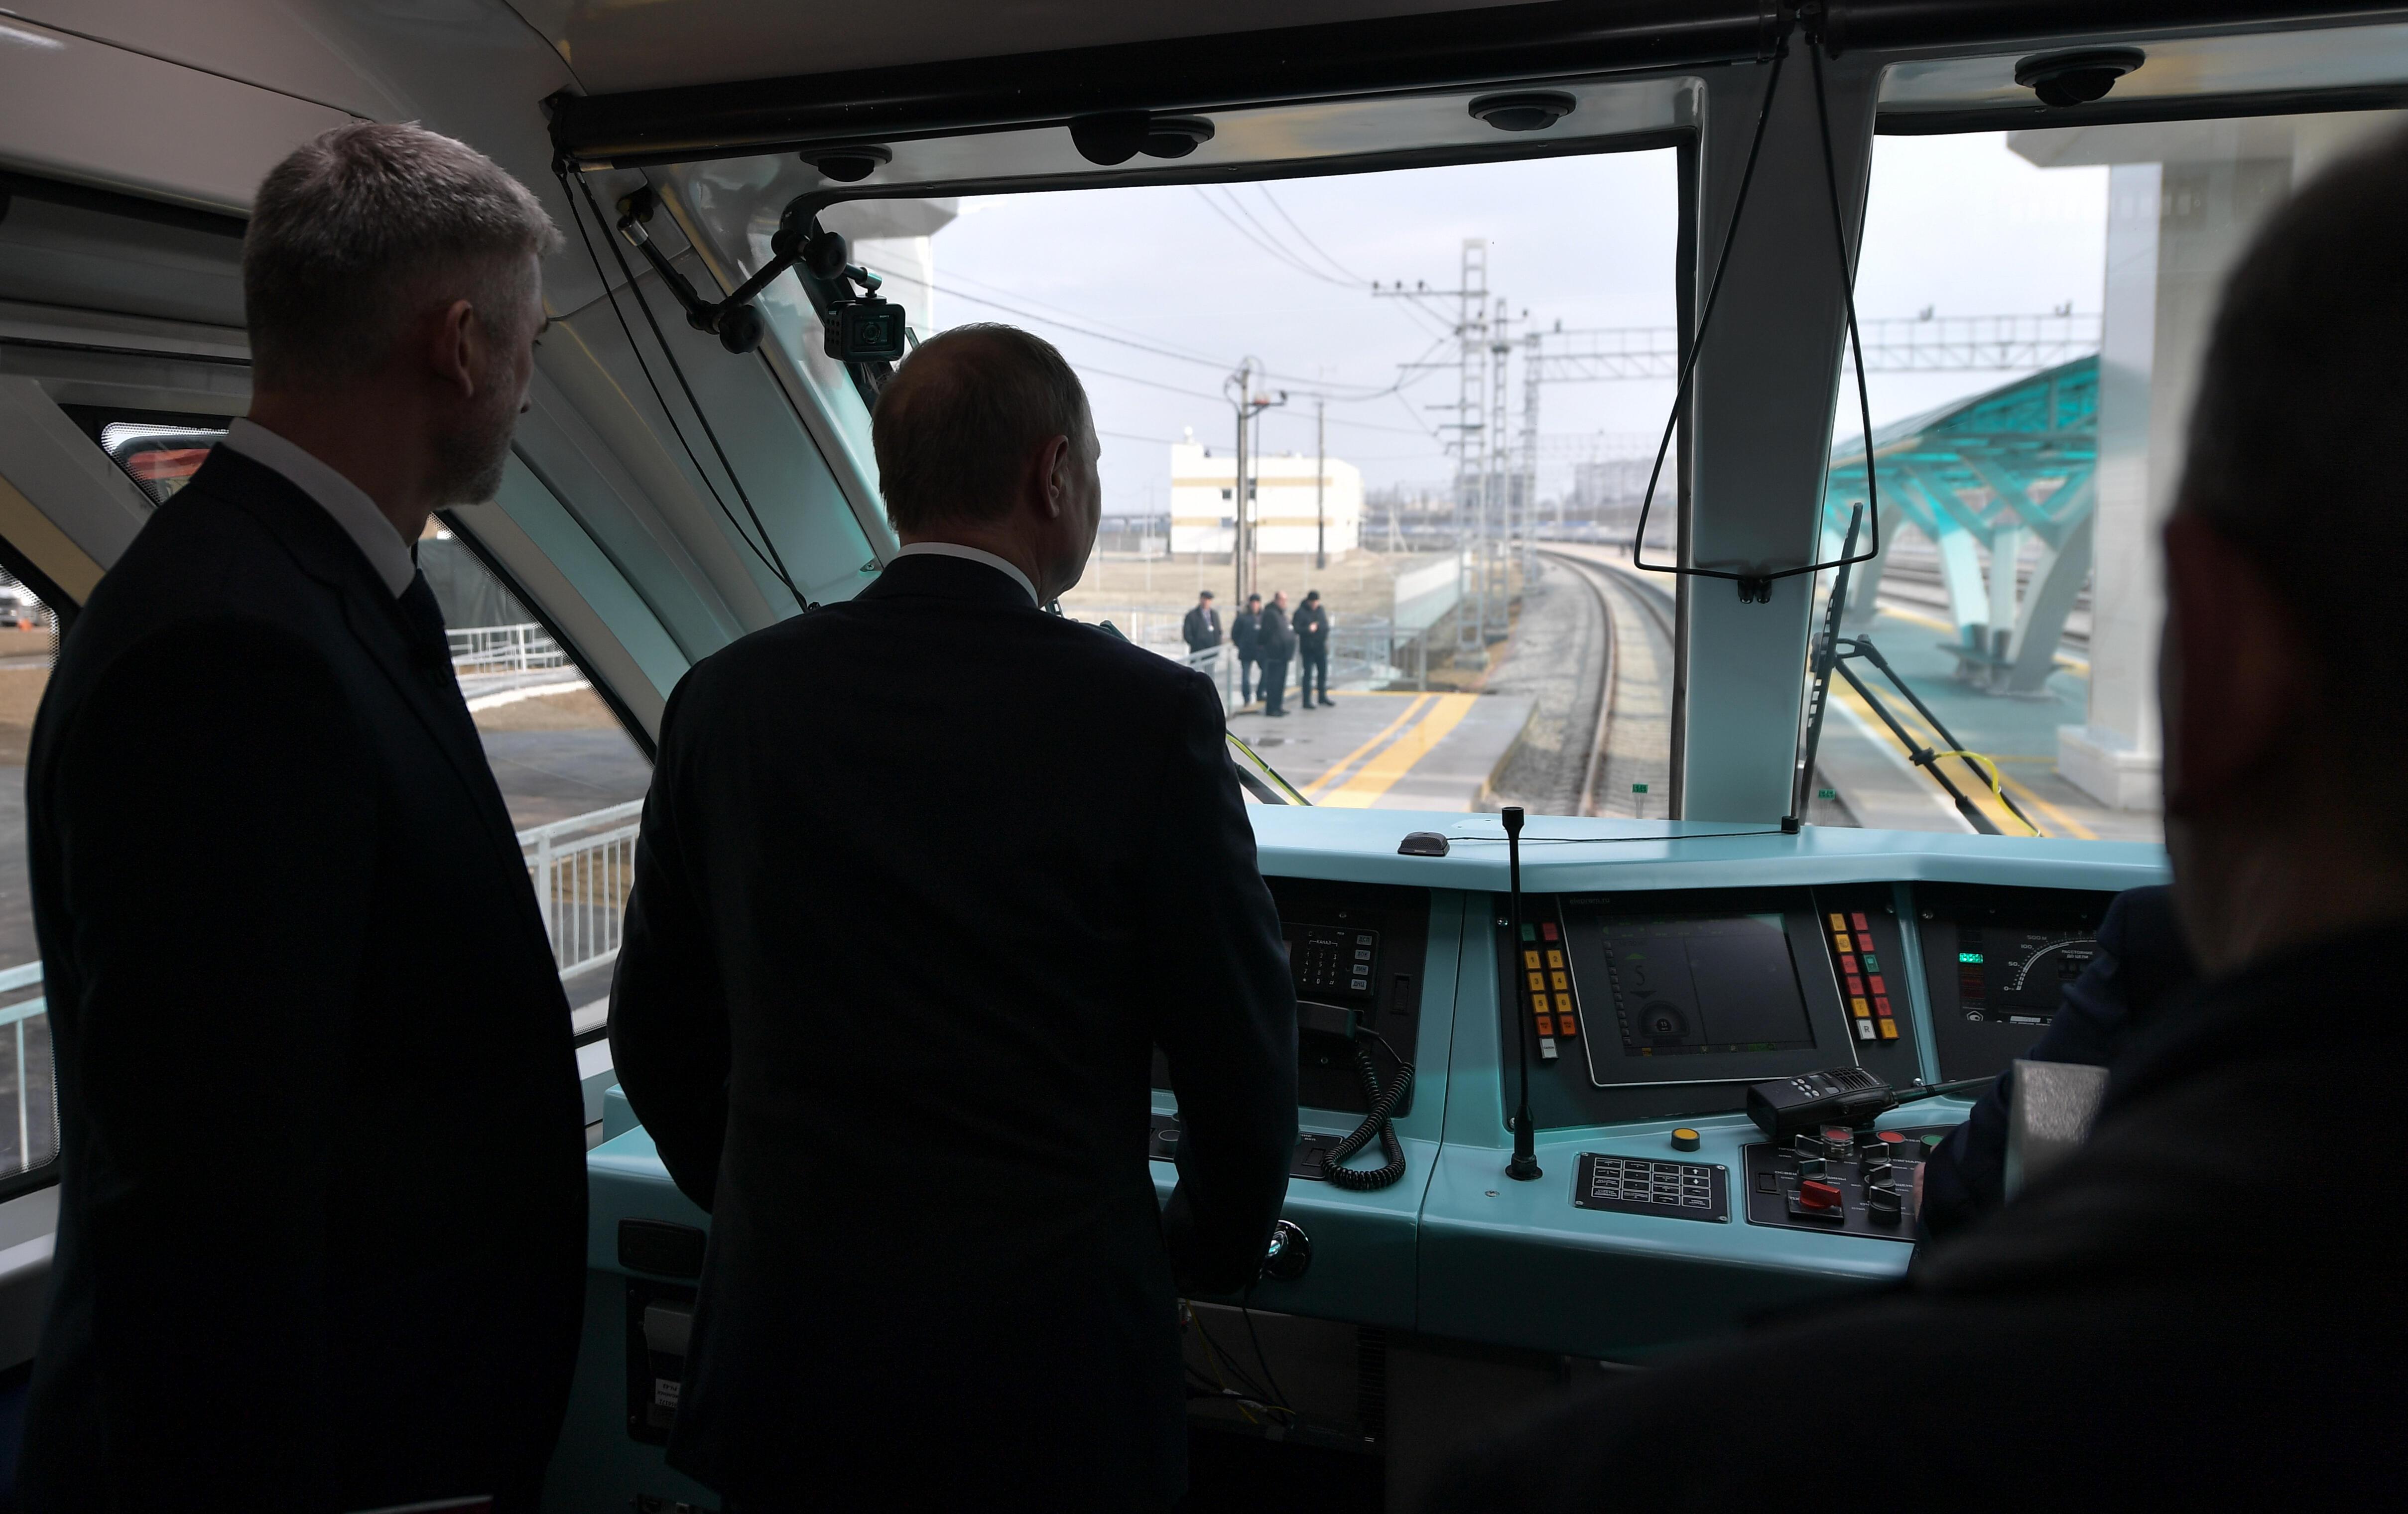 Сколько времени едет поезд по крымскому мосту